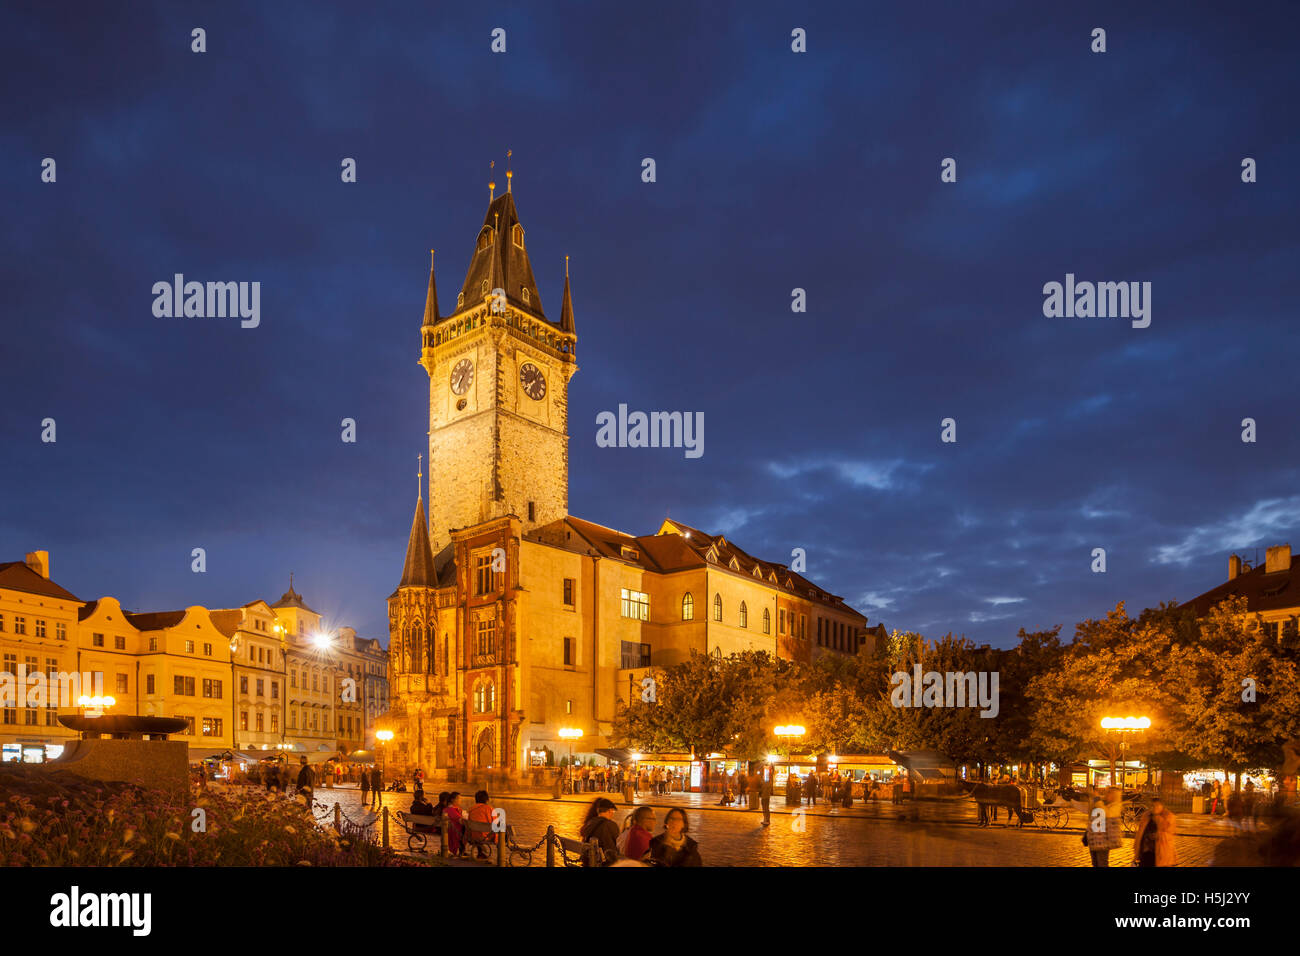 Abend im mittelalterlichen Rathaus am Prager Altstädter Ring, Tschechien. Stockfoto